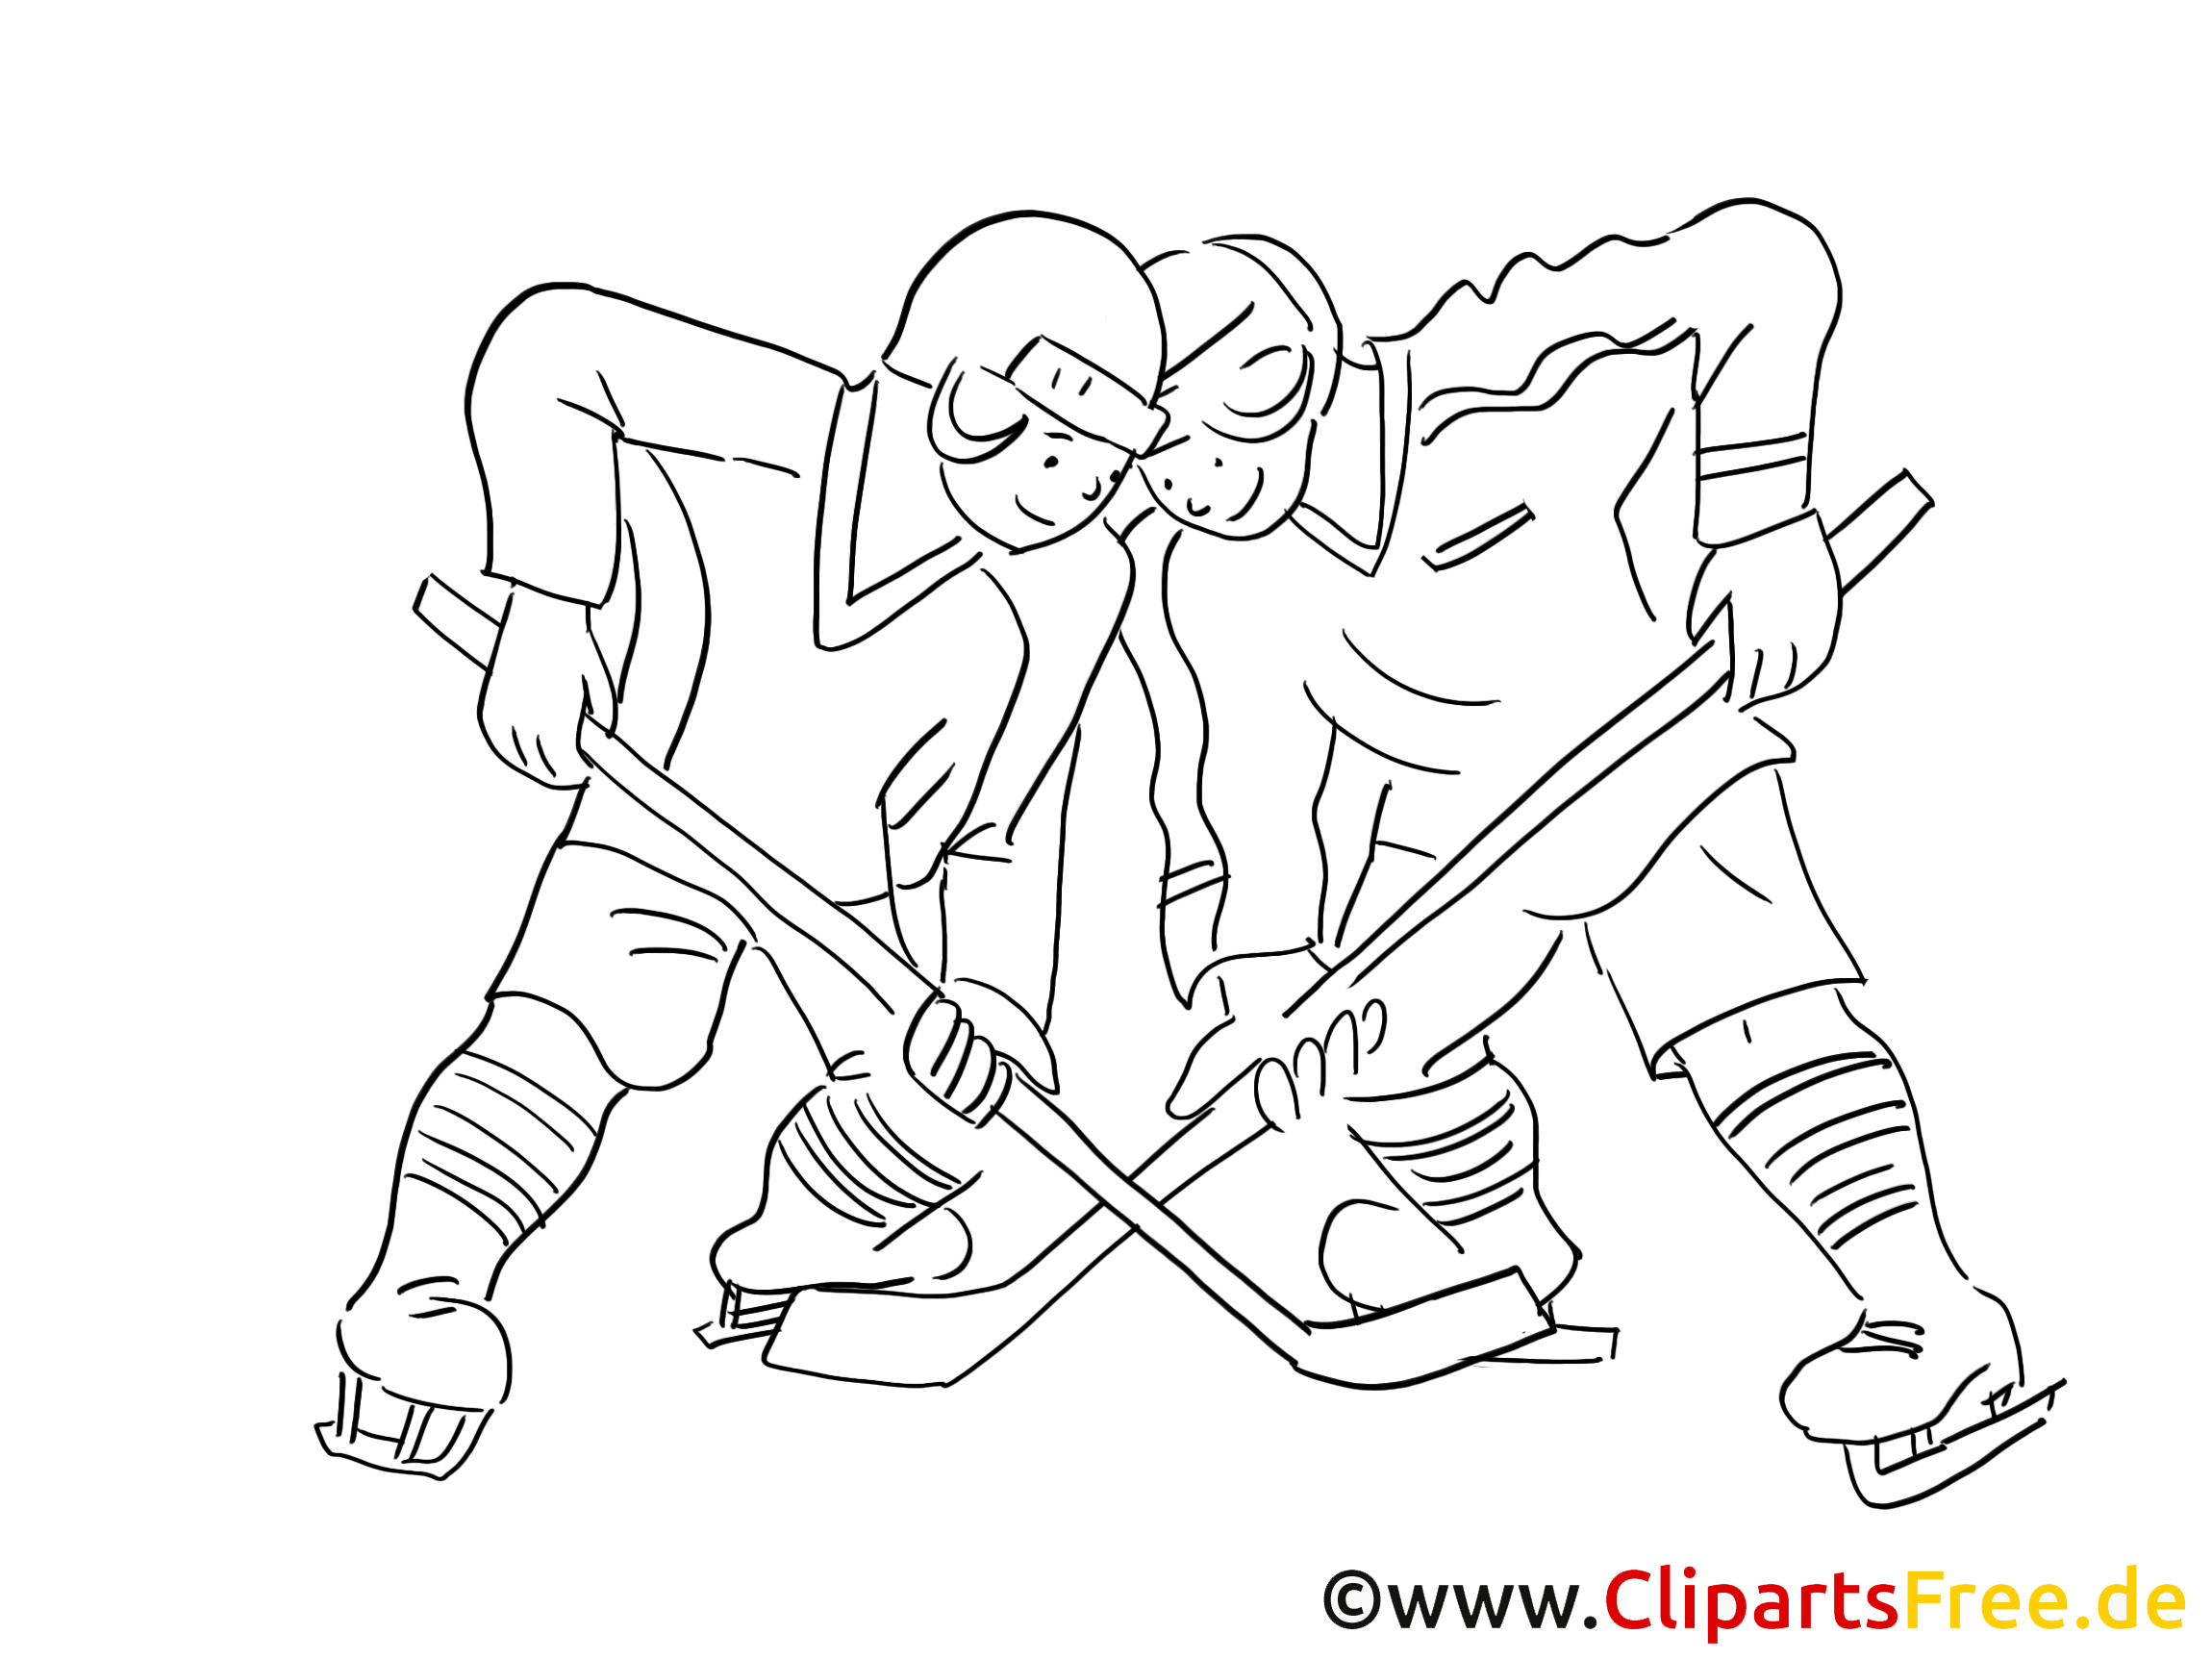 Jeu image à colorier - Hockey images cliparts